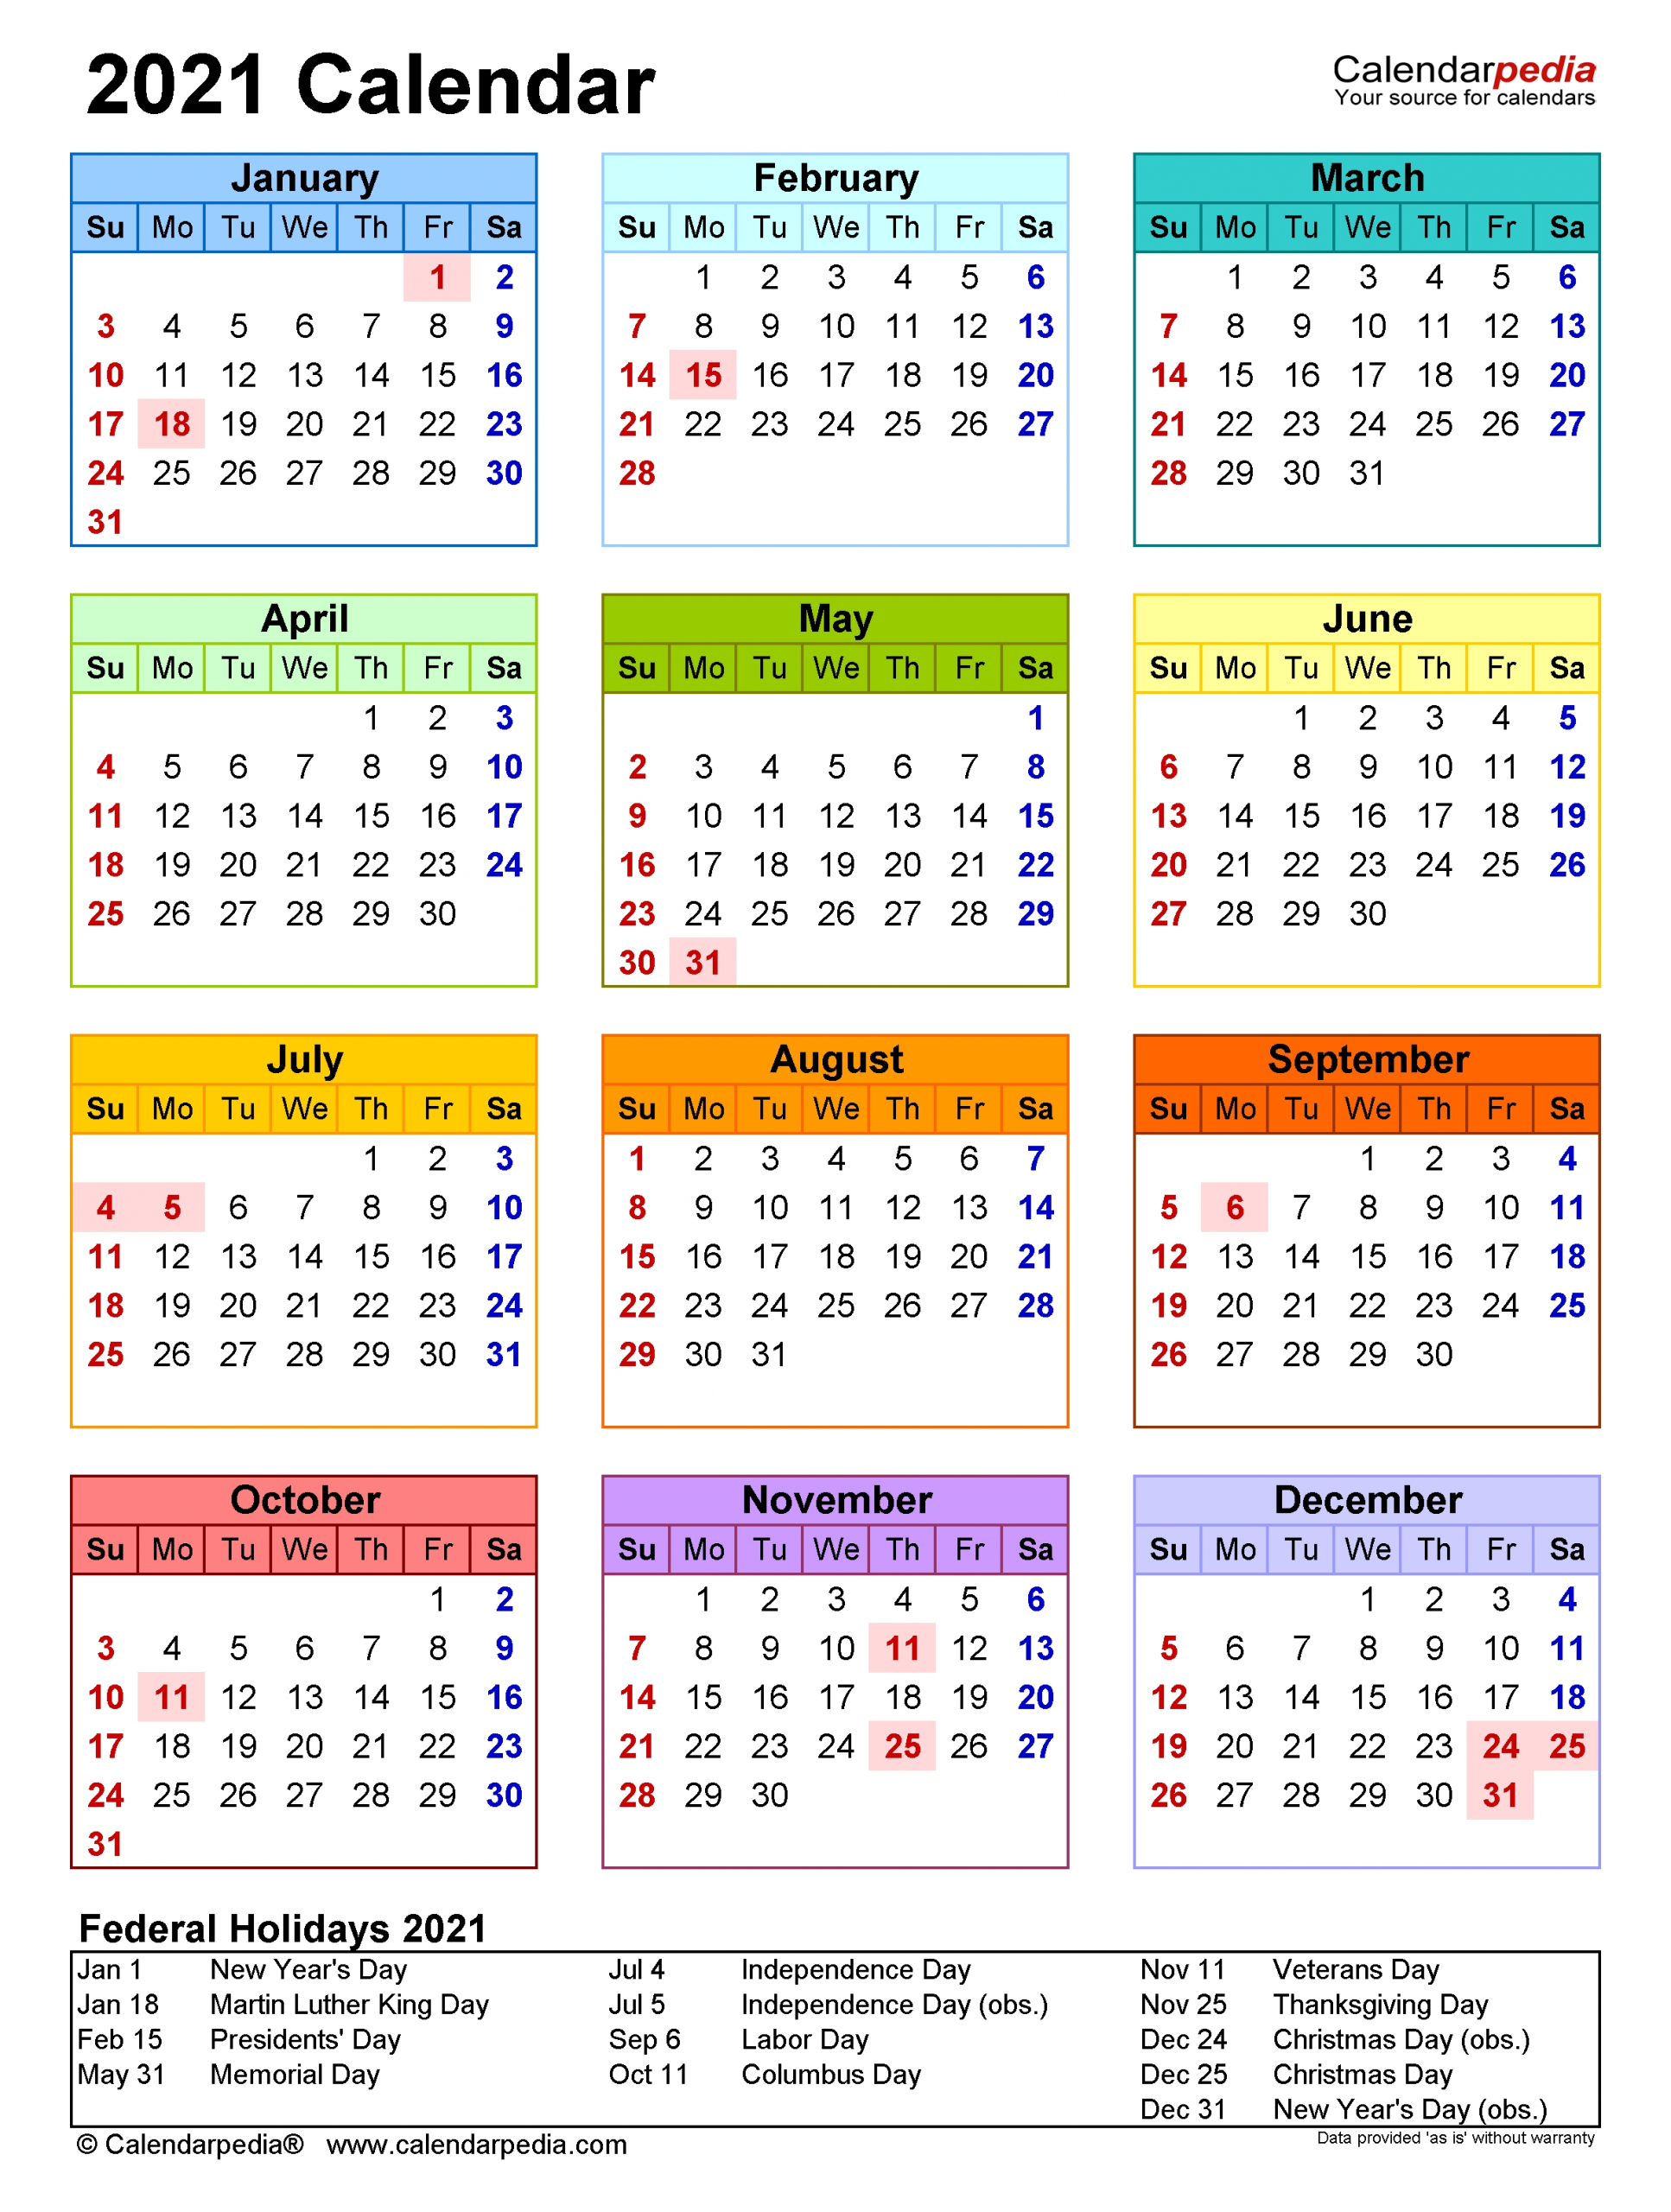 2021 Calendar - Free Printable Excel Templates - Calendarpedia-Employee Calendar Template 2021